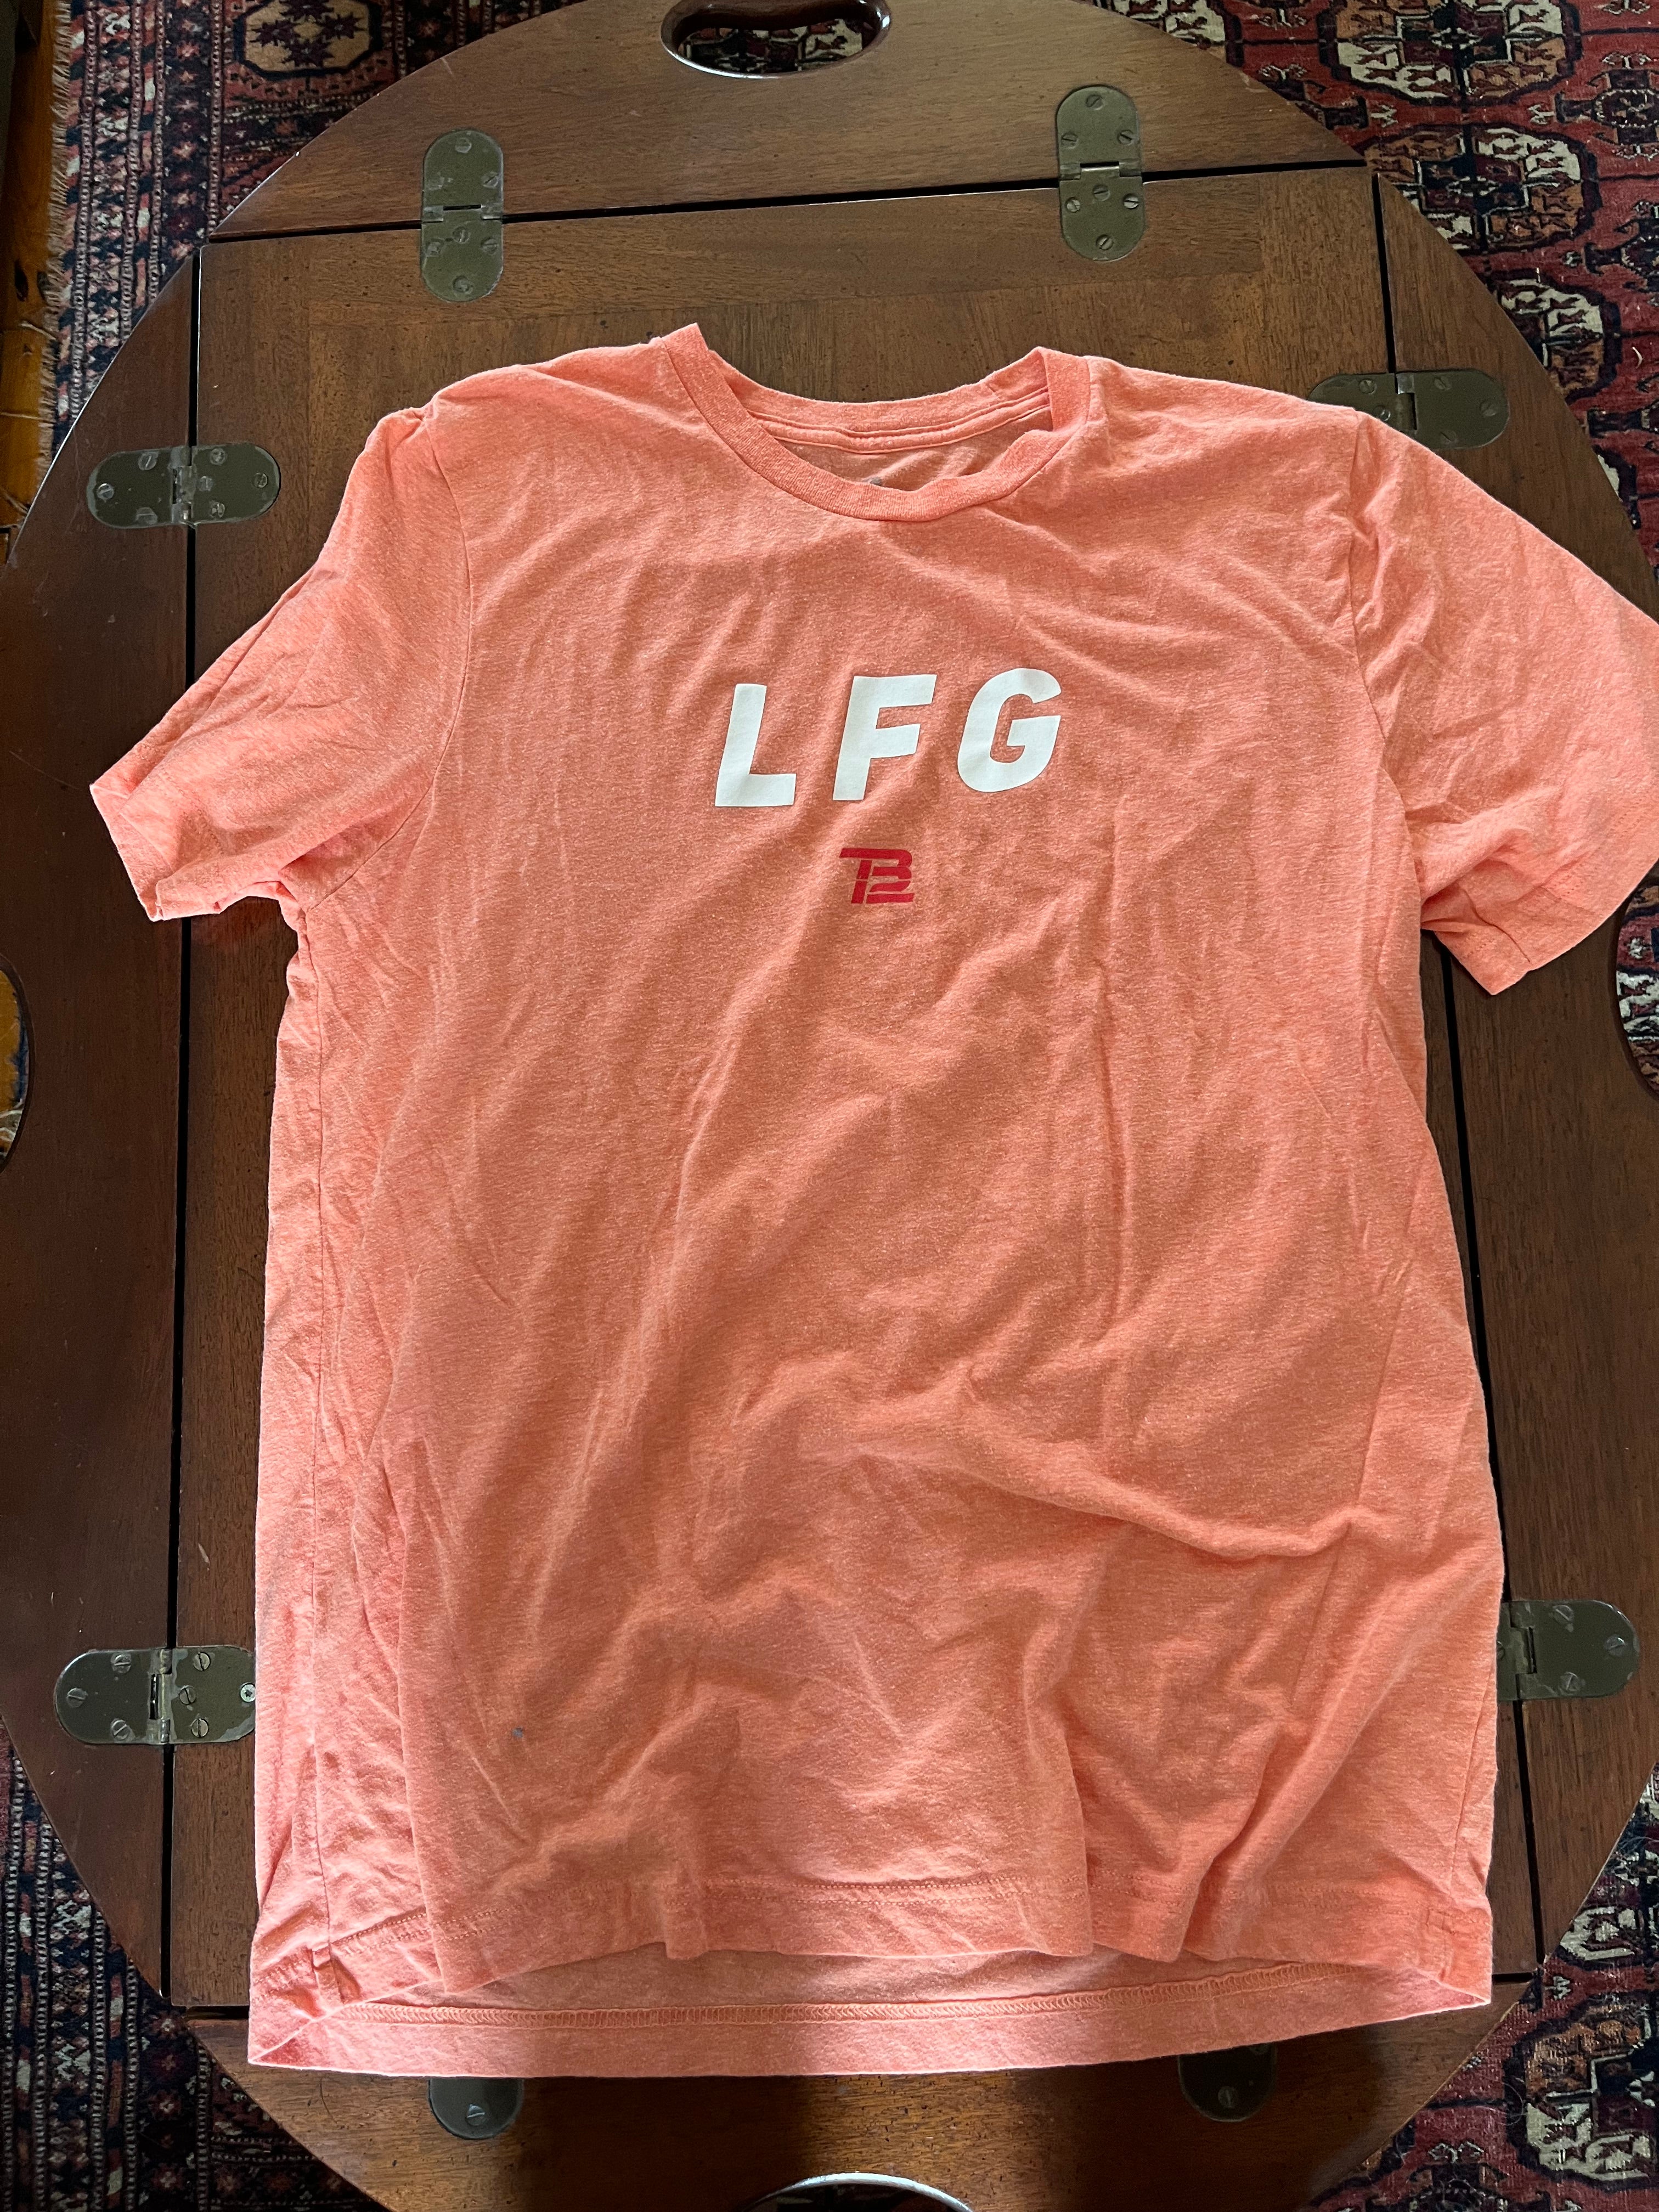 tb12 lfg shirt